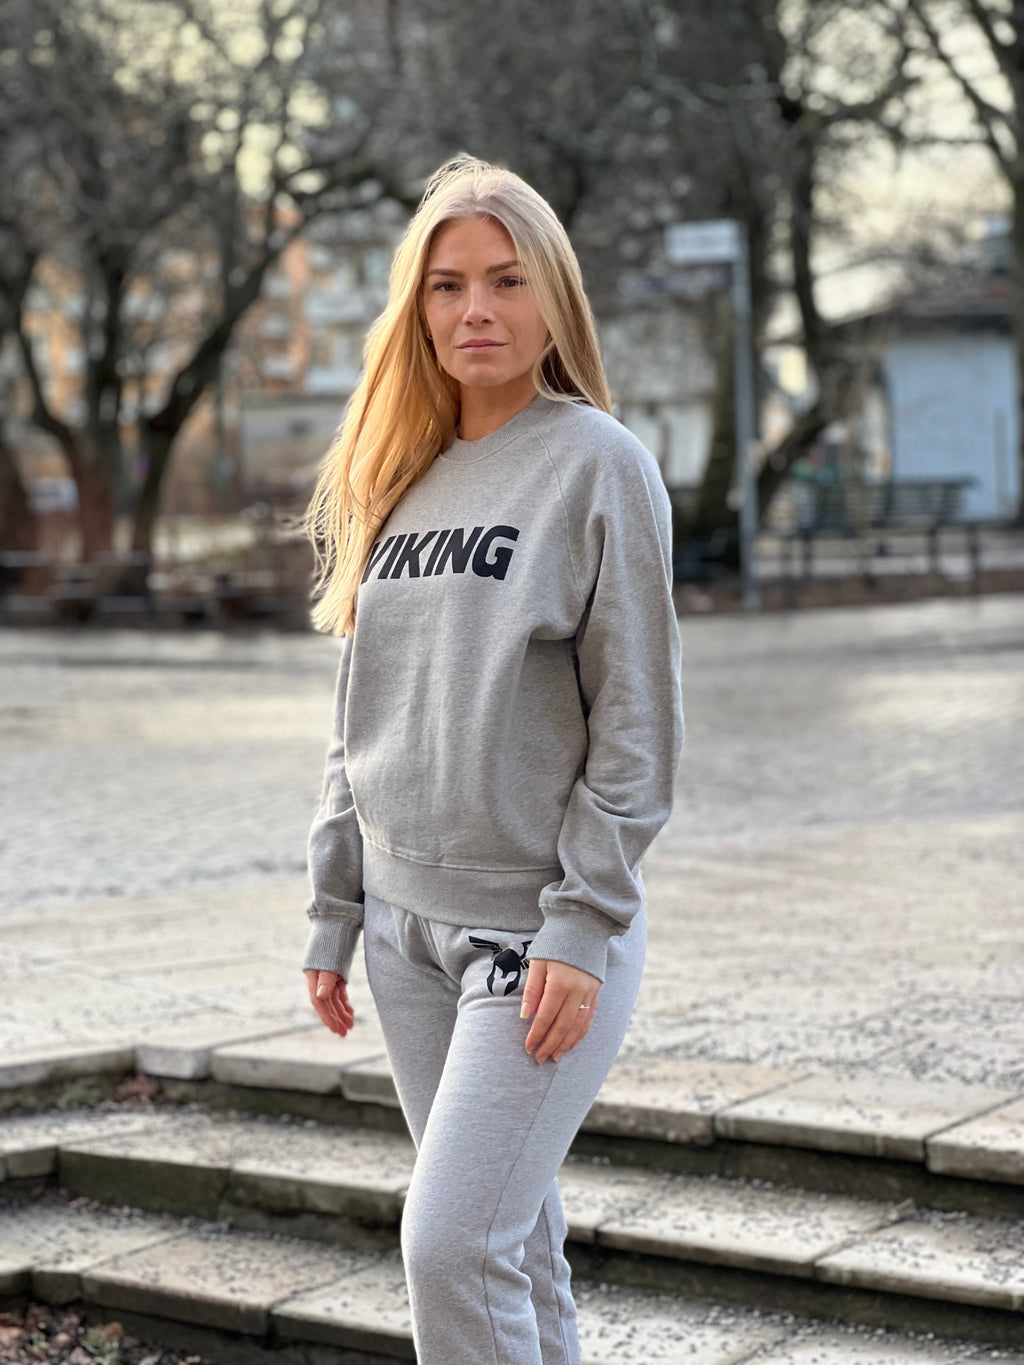 VIKING Sweatshirt - Women